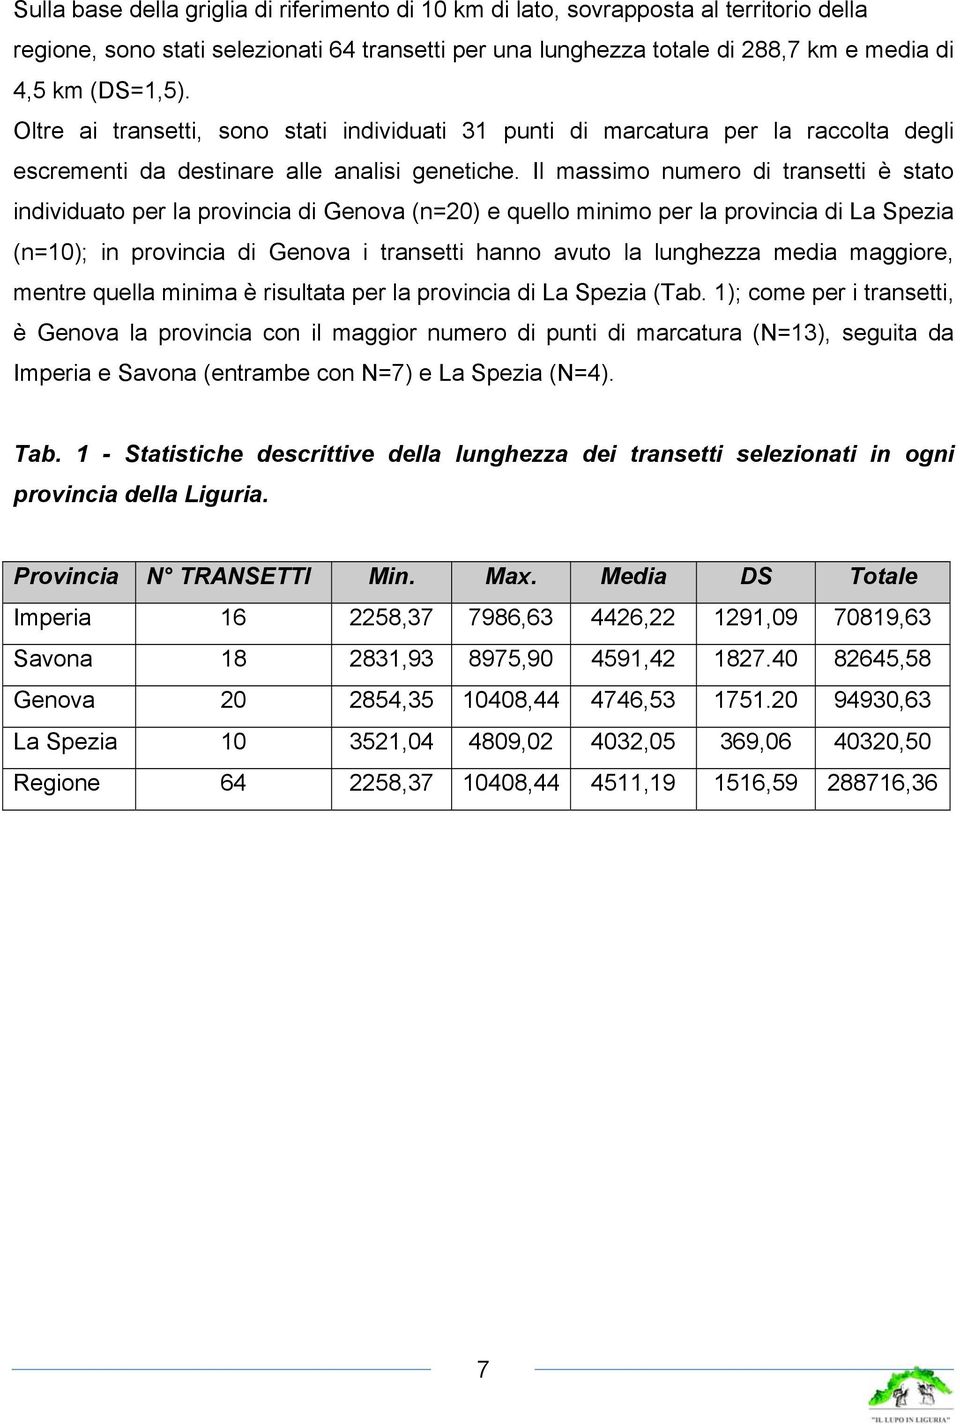 Il massimo numero di transetti è stato individuato per la provincia di Genova (n=20) e quello minimo per la provincia di La Spezia (n=10); in provincia di Genova i transetti hanno avuto la lunghezza